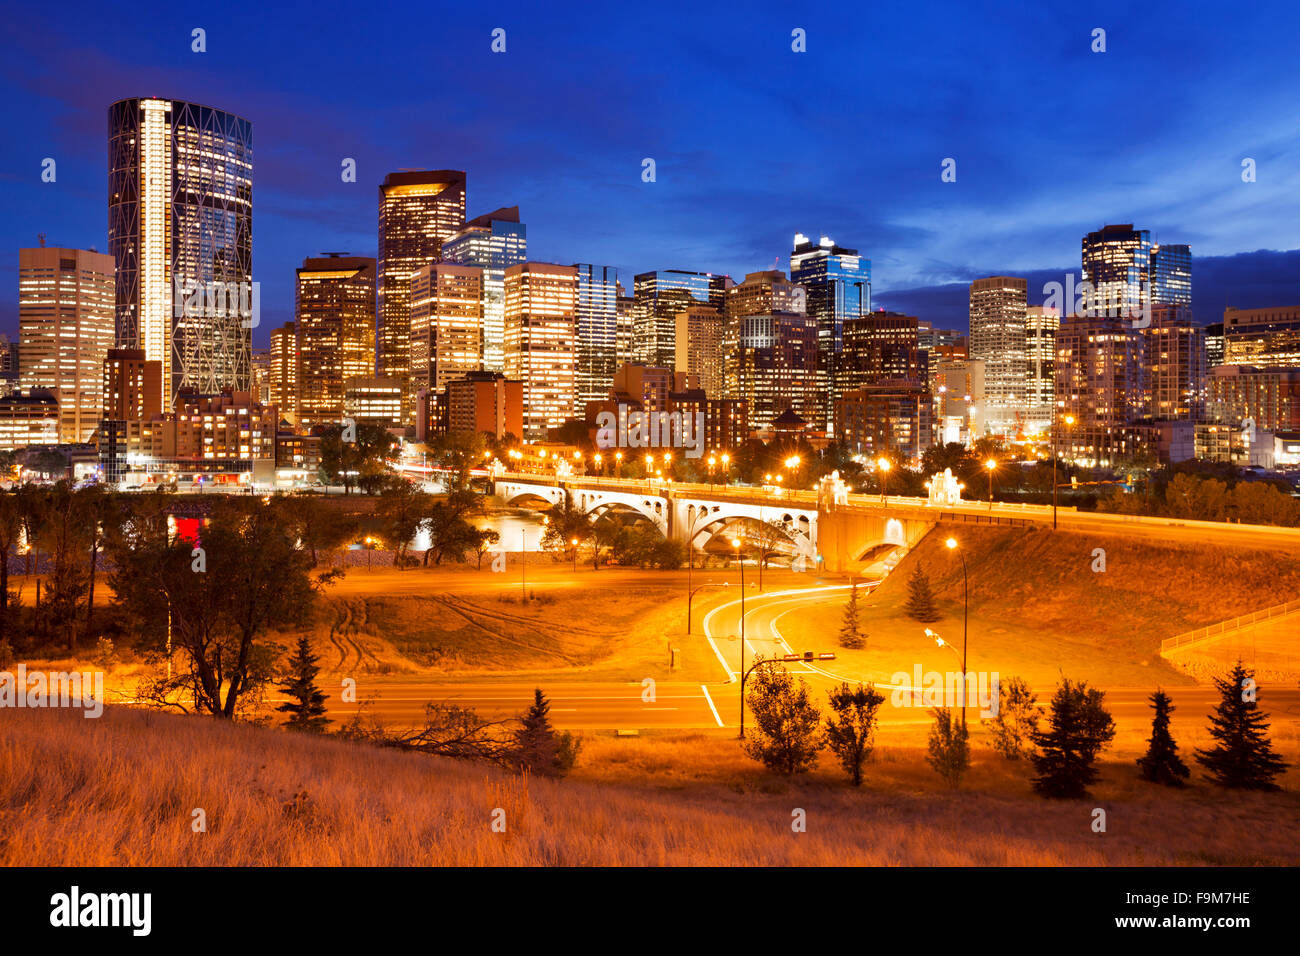 Lo skyline del centro cittadino di Calgary, Alberta, Canada, fotografata al crepuscolo. Foto Stock